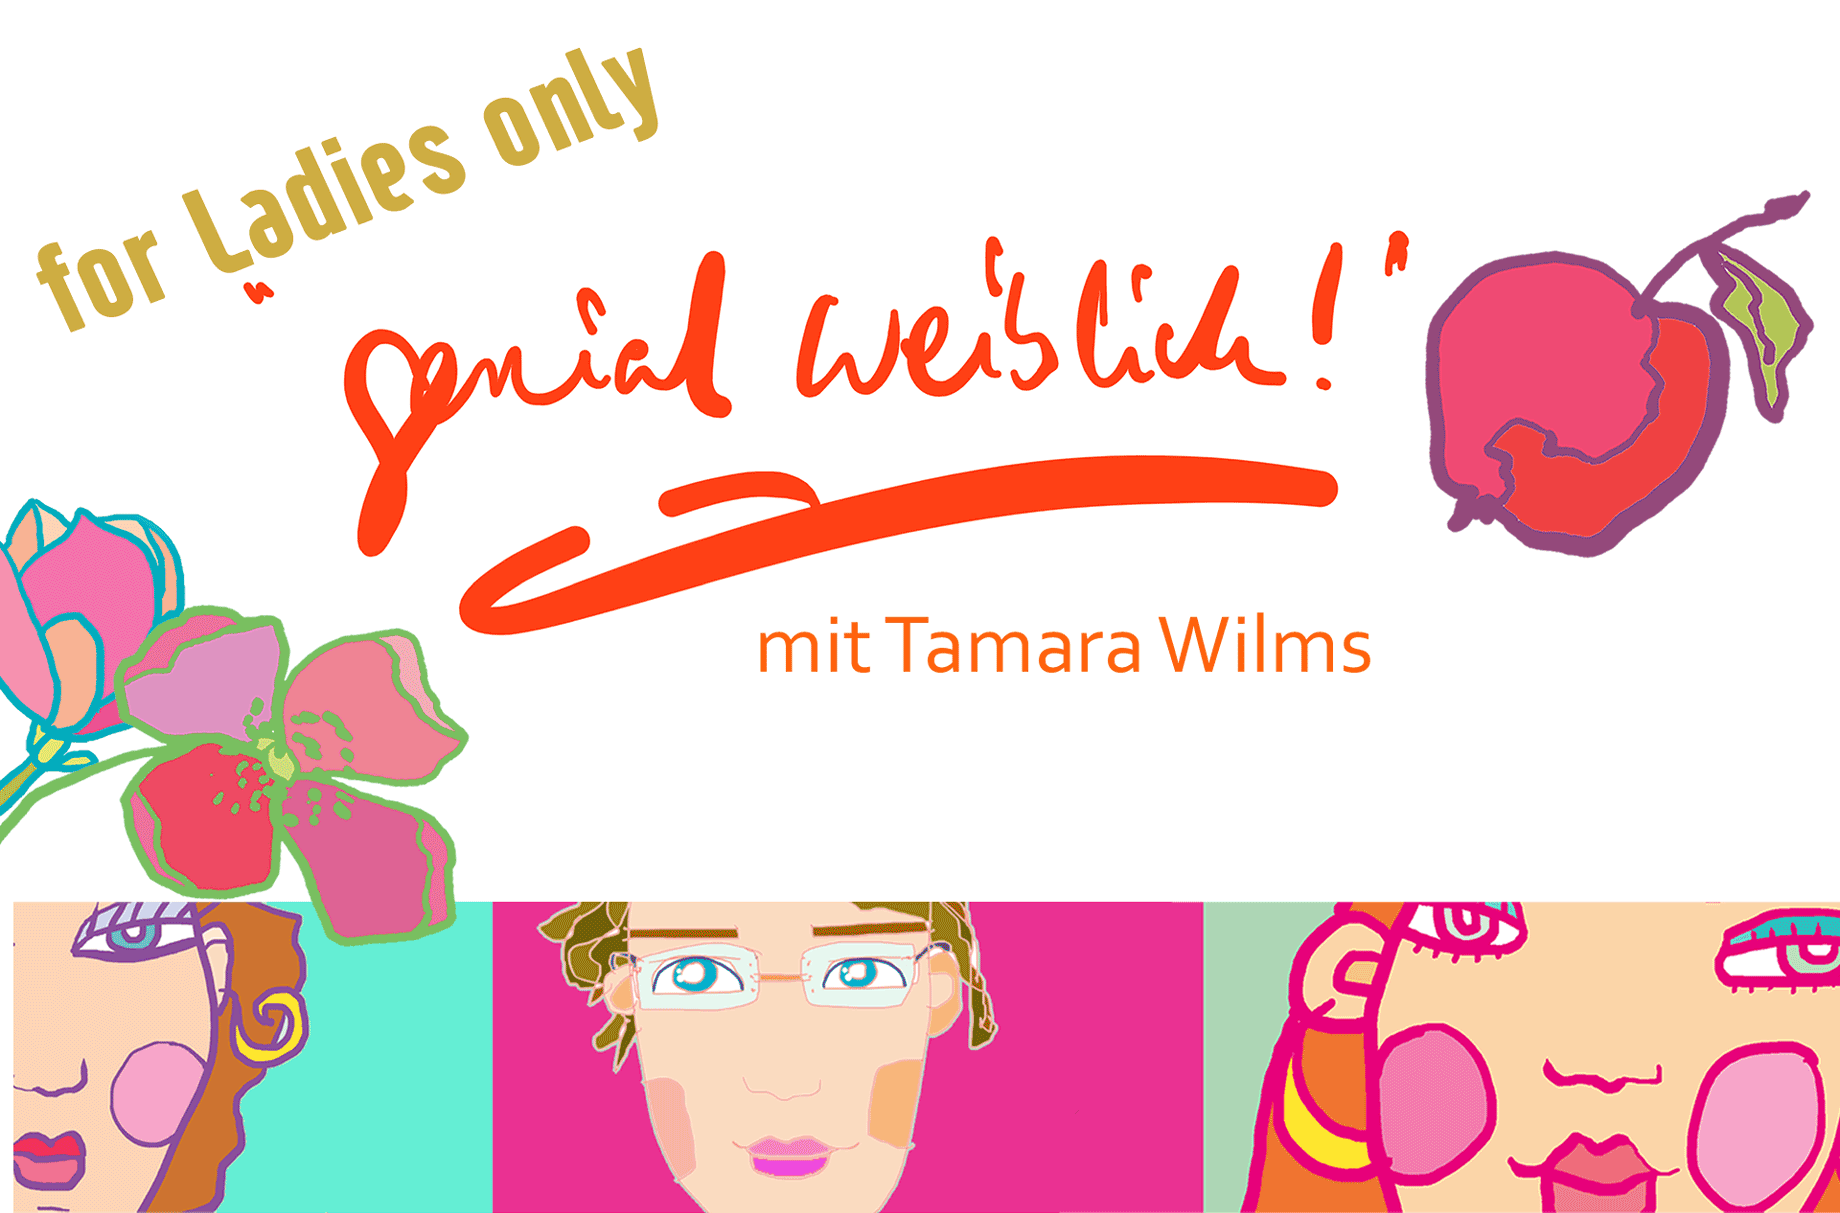 for Ladies only "genial weiblich!" mit Tamara Wilms